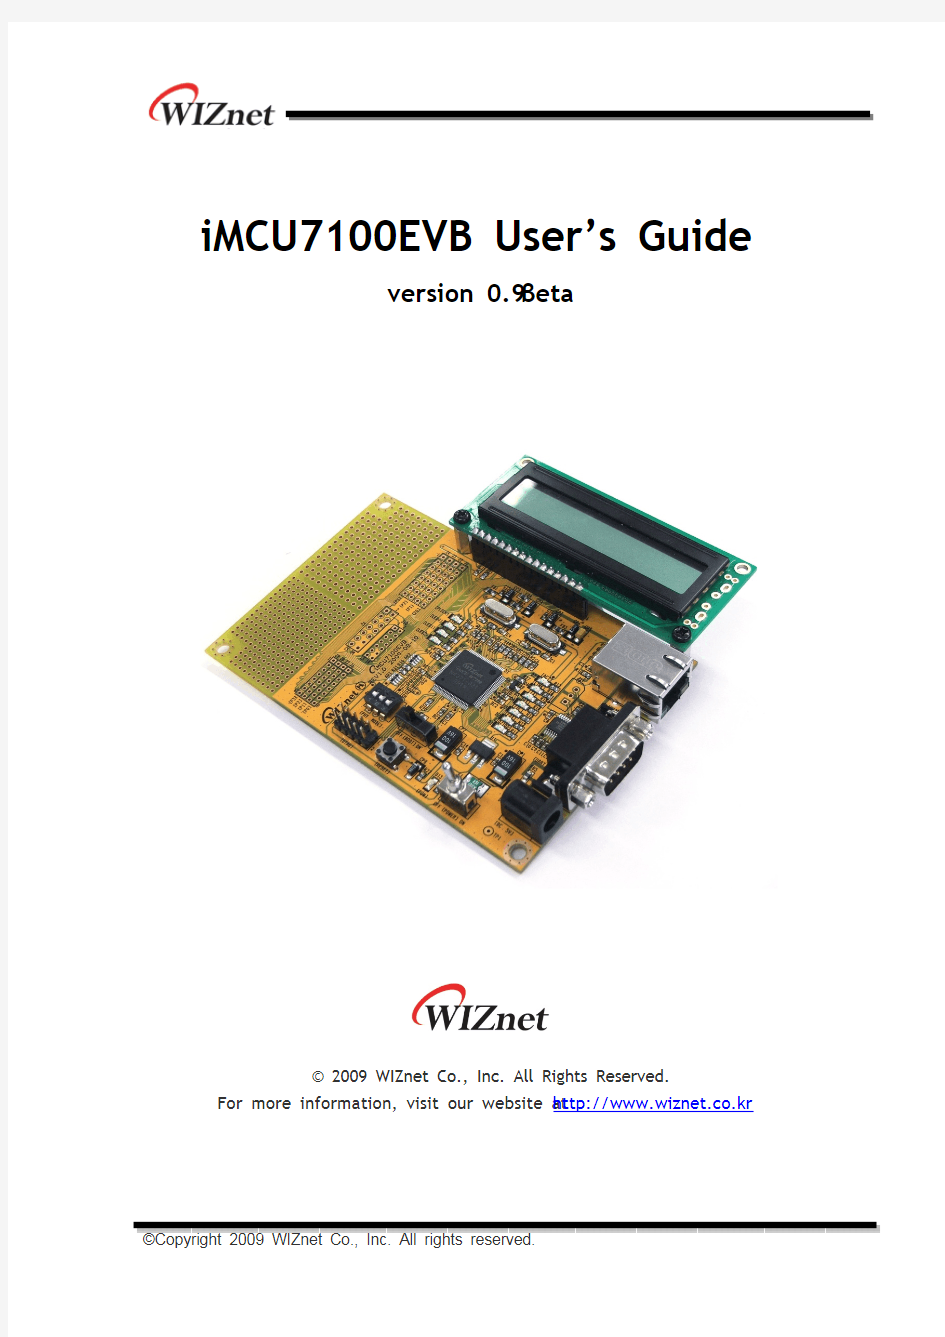 iMCU7100EVB_User's_Guide_v0.9beta_en